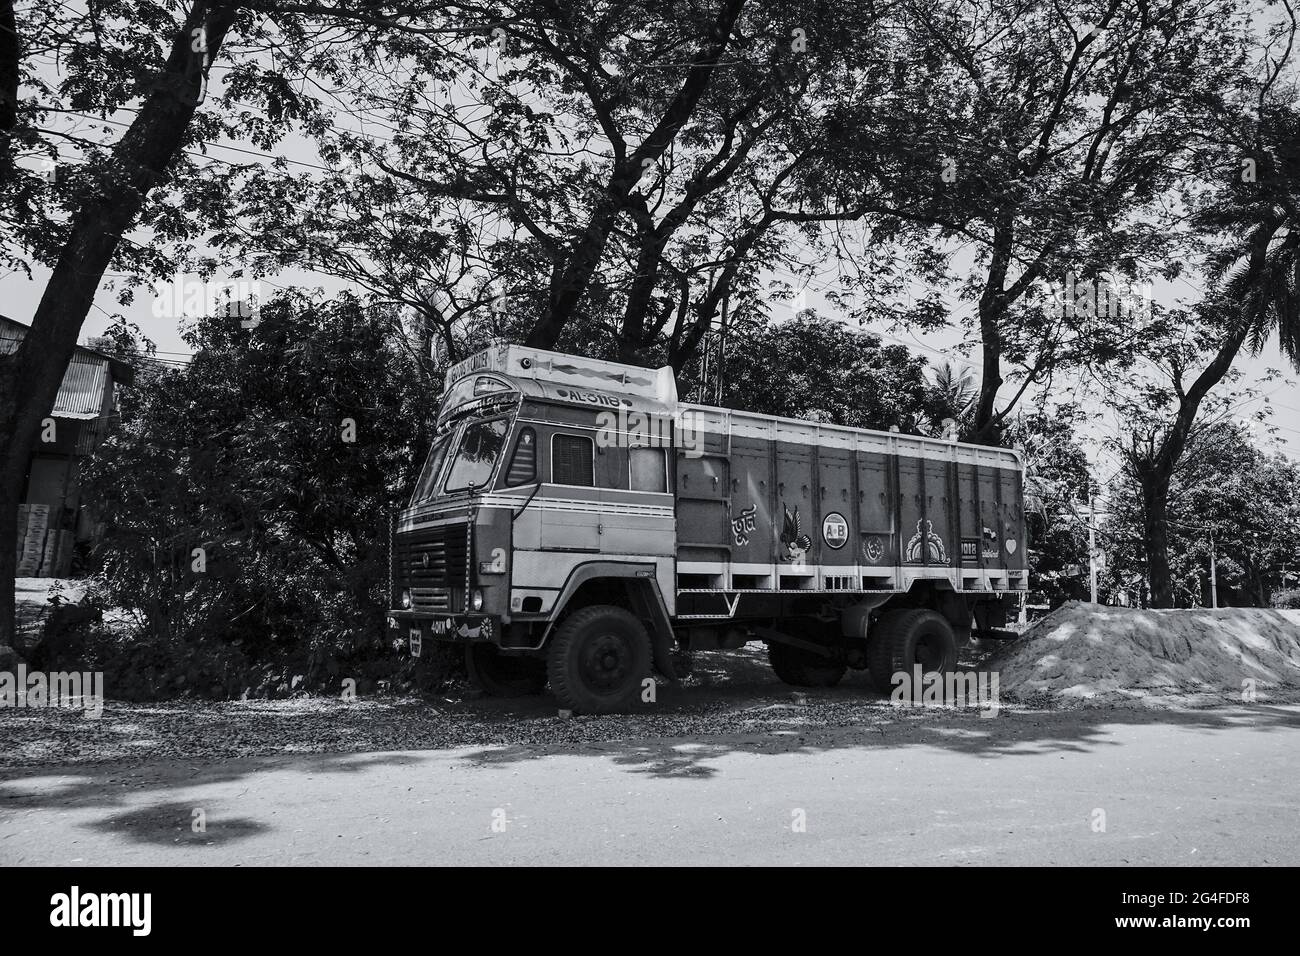 HOWRAH, BENGALA OCCIDENTALE, INDIA - 24 FEBBRAIO 2018 : UN camion di trasporto di merci sta trasportando le merci sull'autostrada durante il giorno. Immagine in bianco e nero. Foto Stock